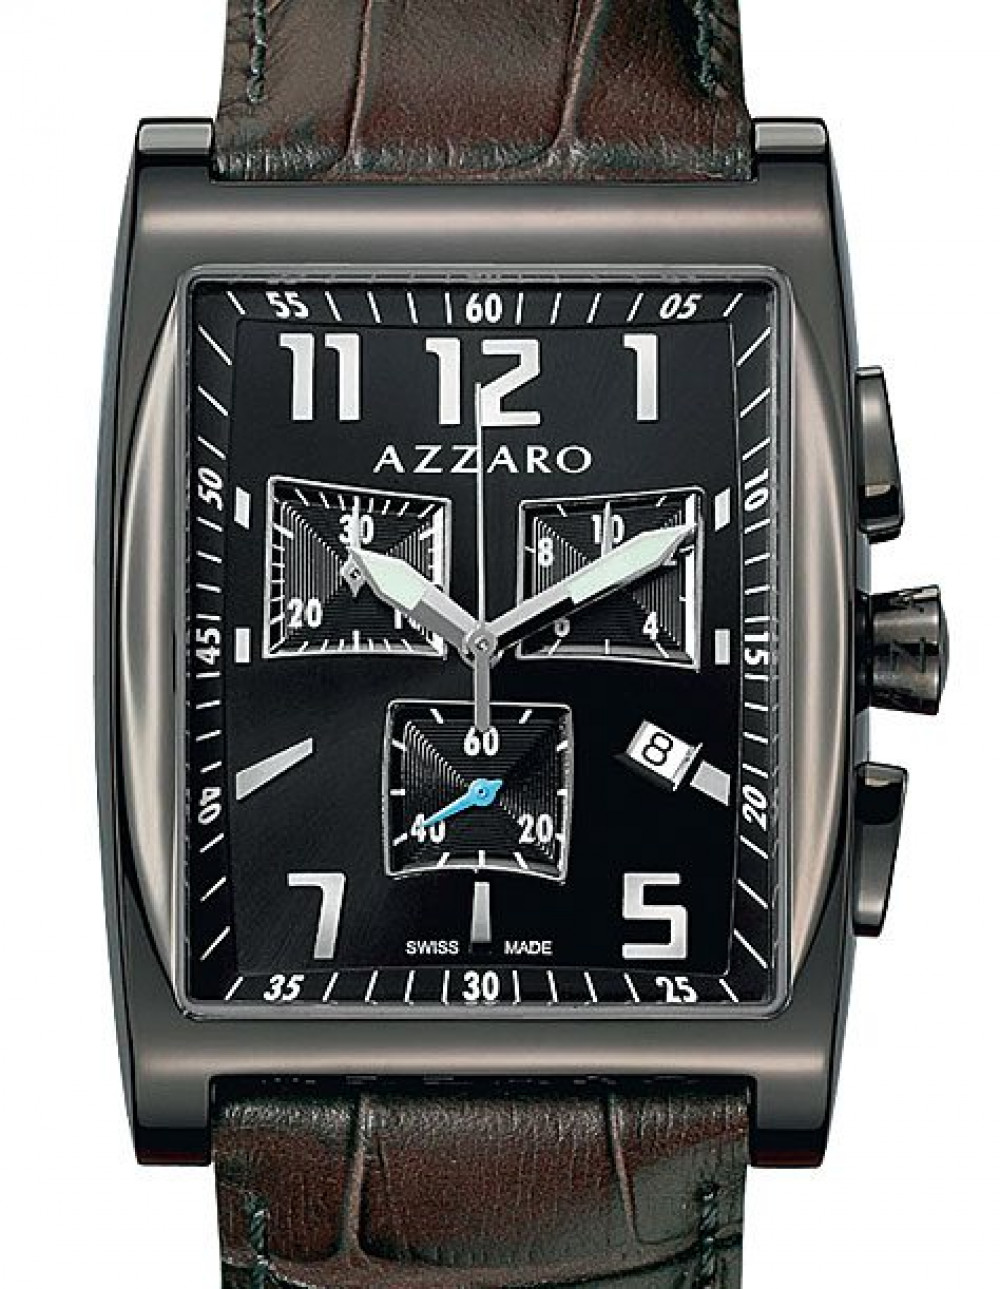 Zegarek firmy Azzaro, model Chrono Gents